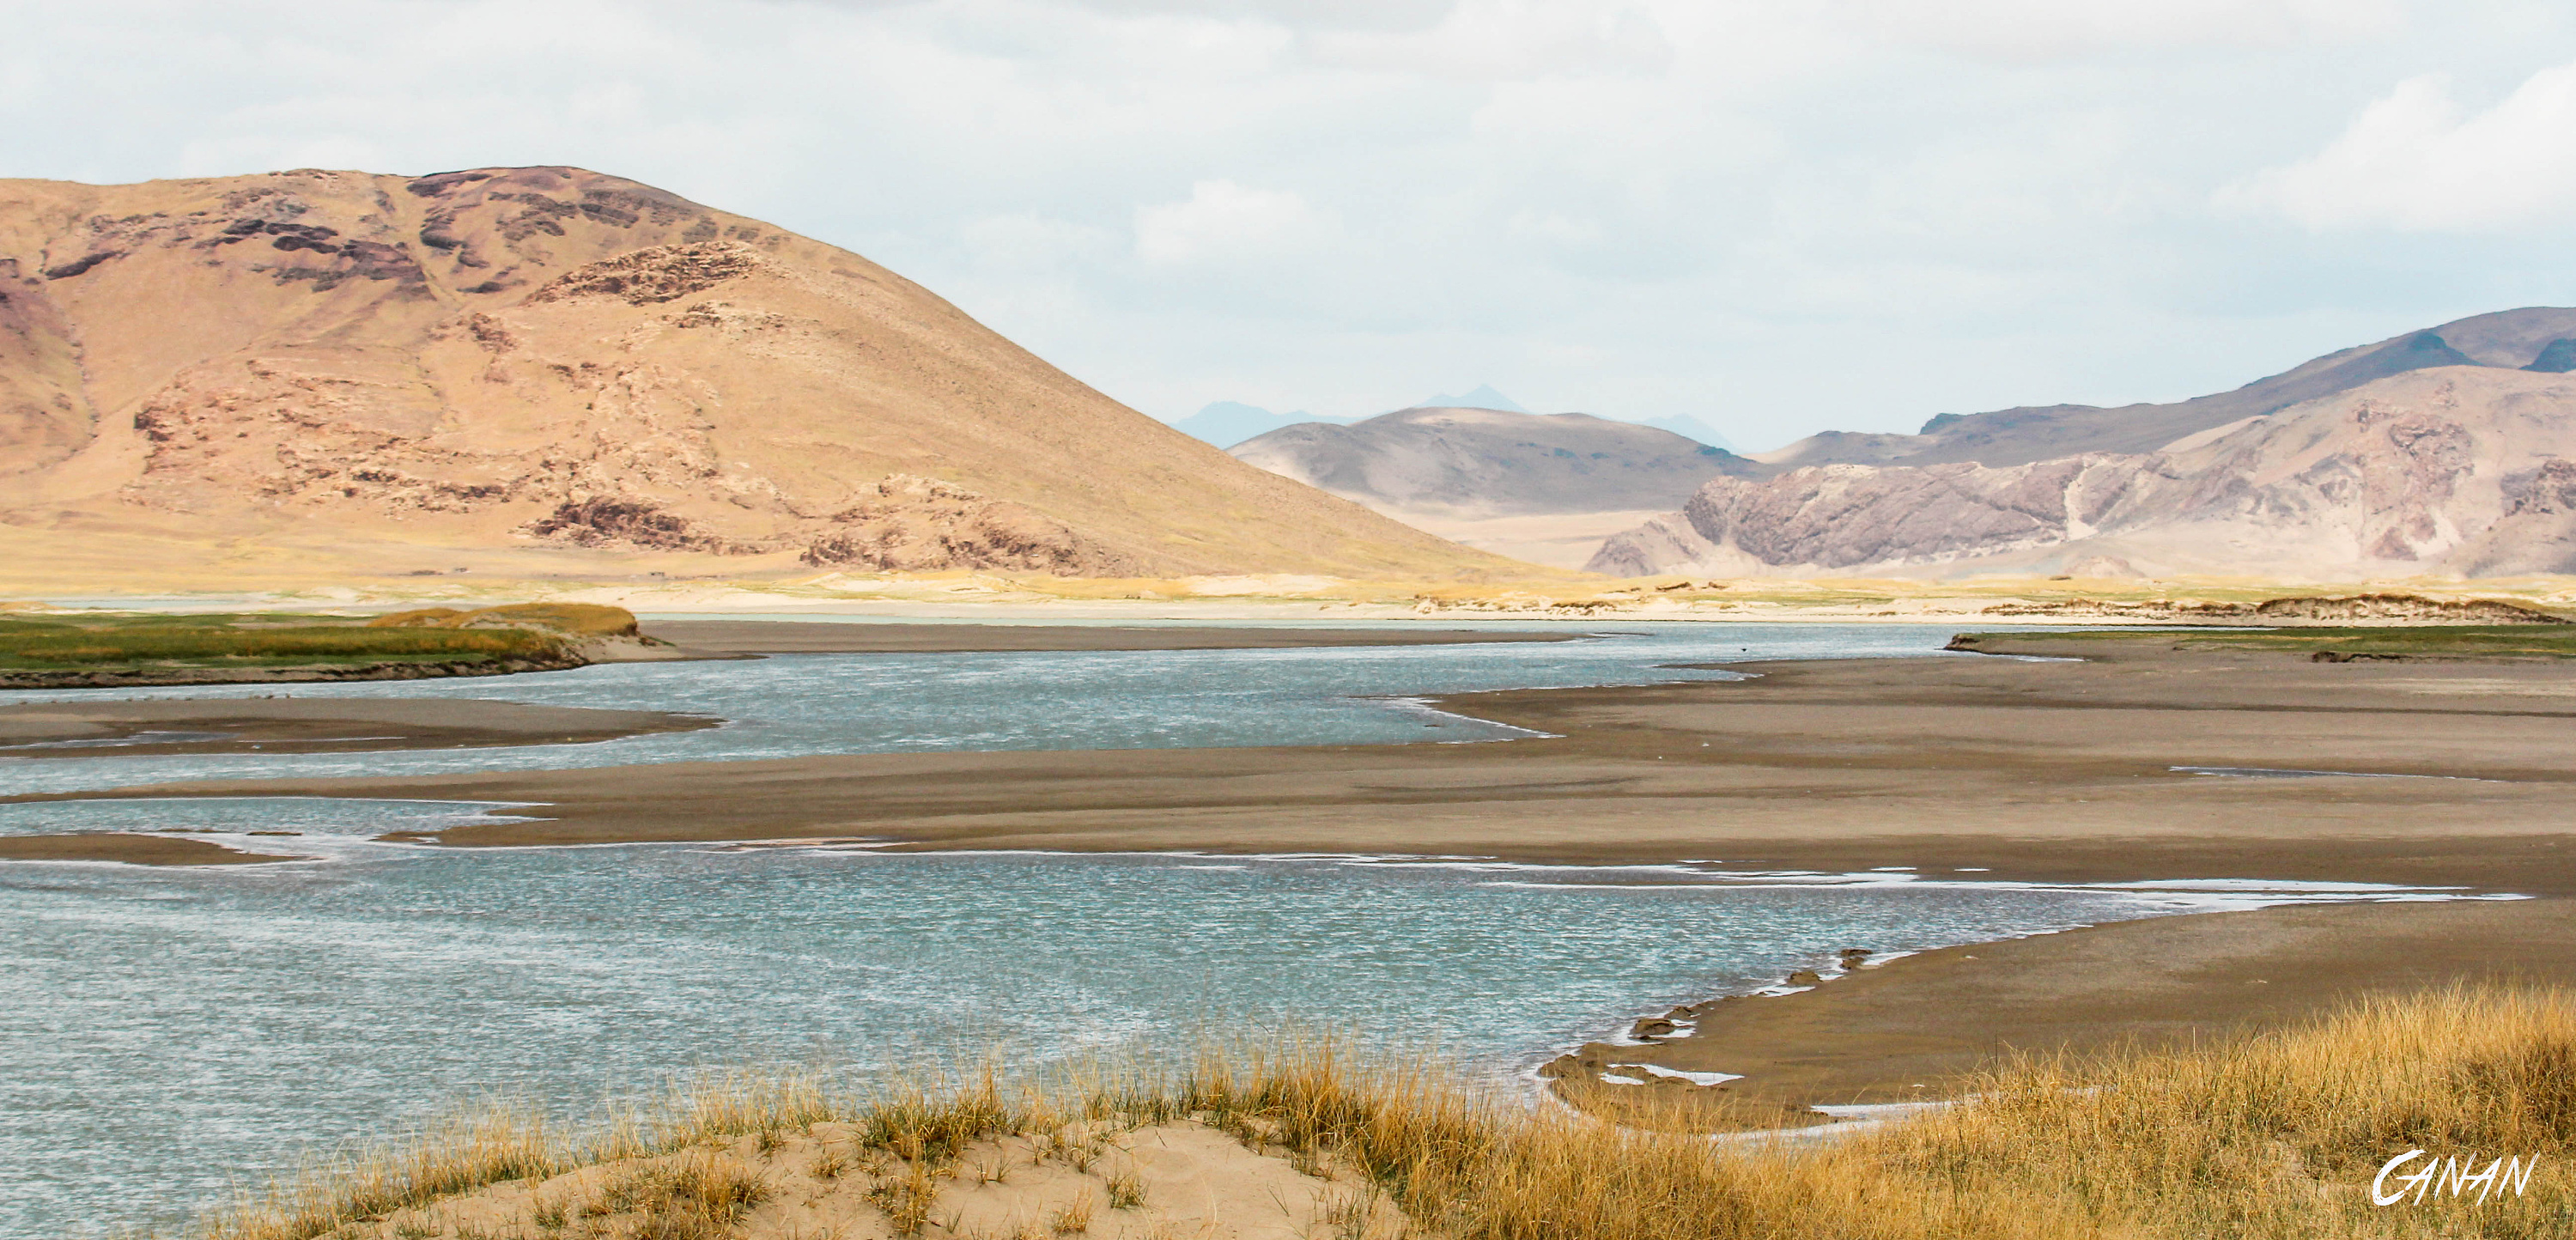 天上阿里，人间仙境：环游西藏阿里的世界高原自驾之旅 - 哔哩哔哩